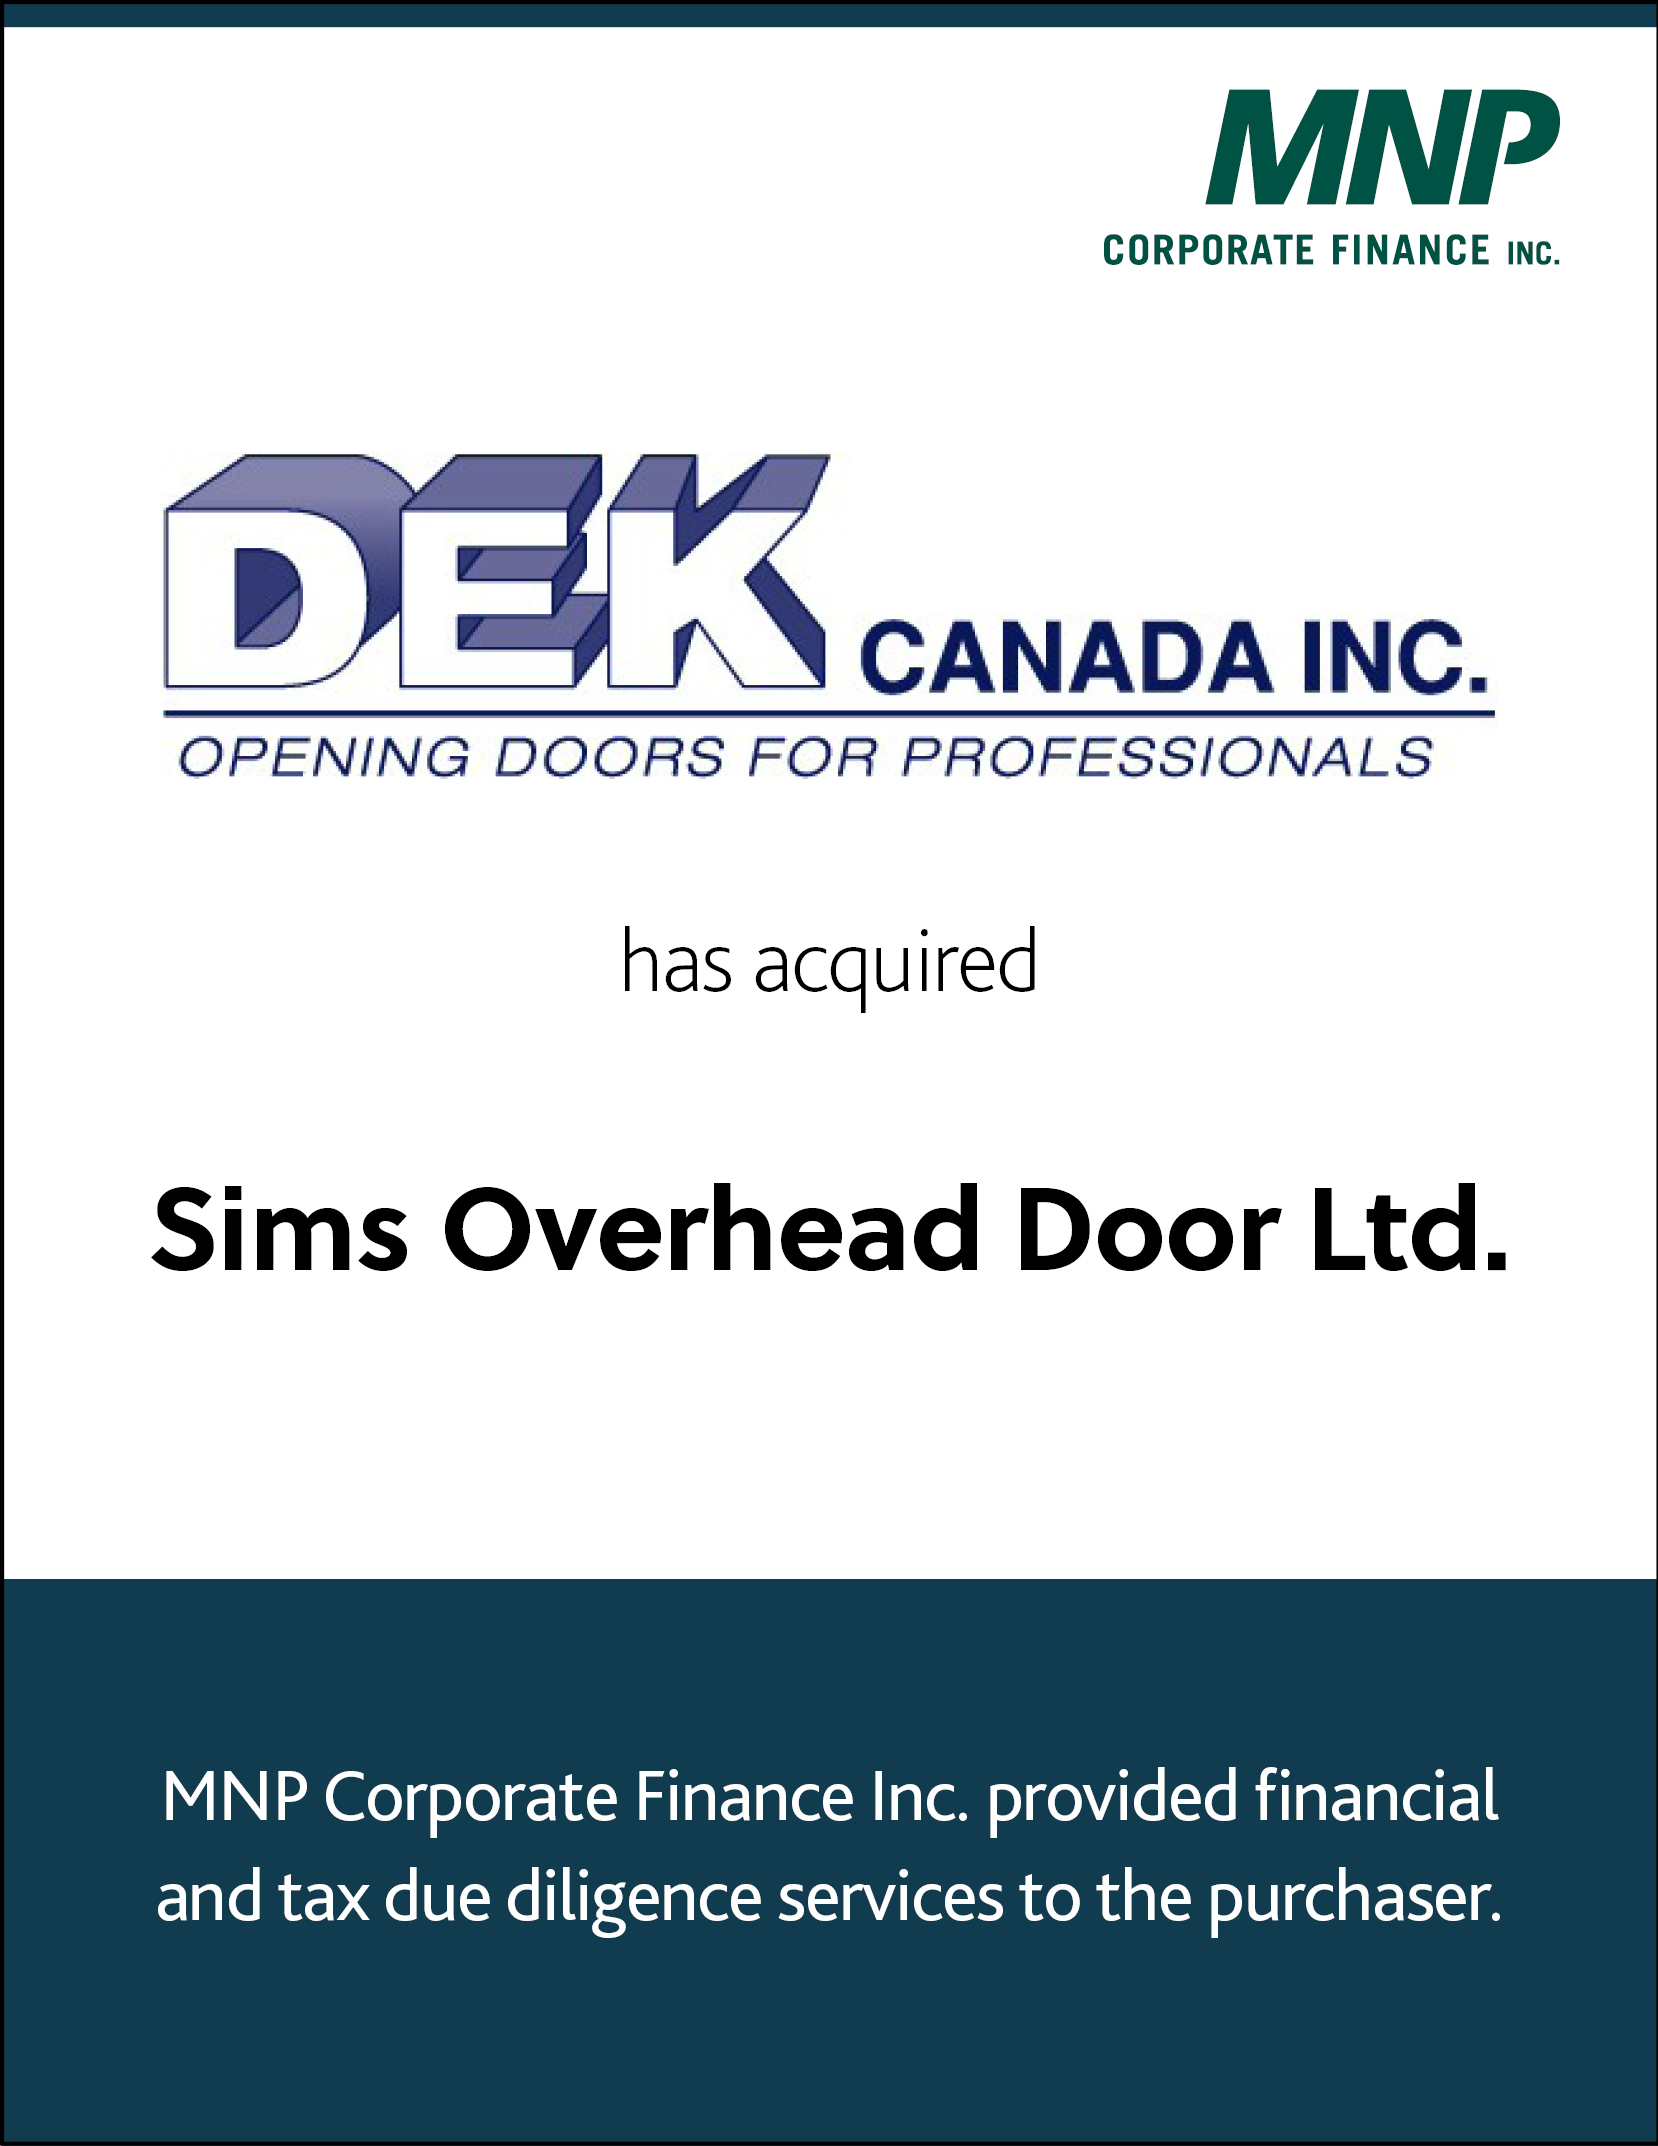 DEK Canada Inc. Opening Doors for Professionals has Acquired Sims Overhead Door Ltd. 